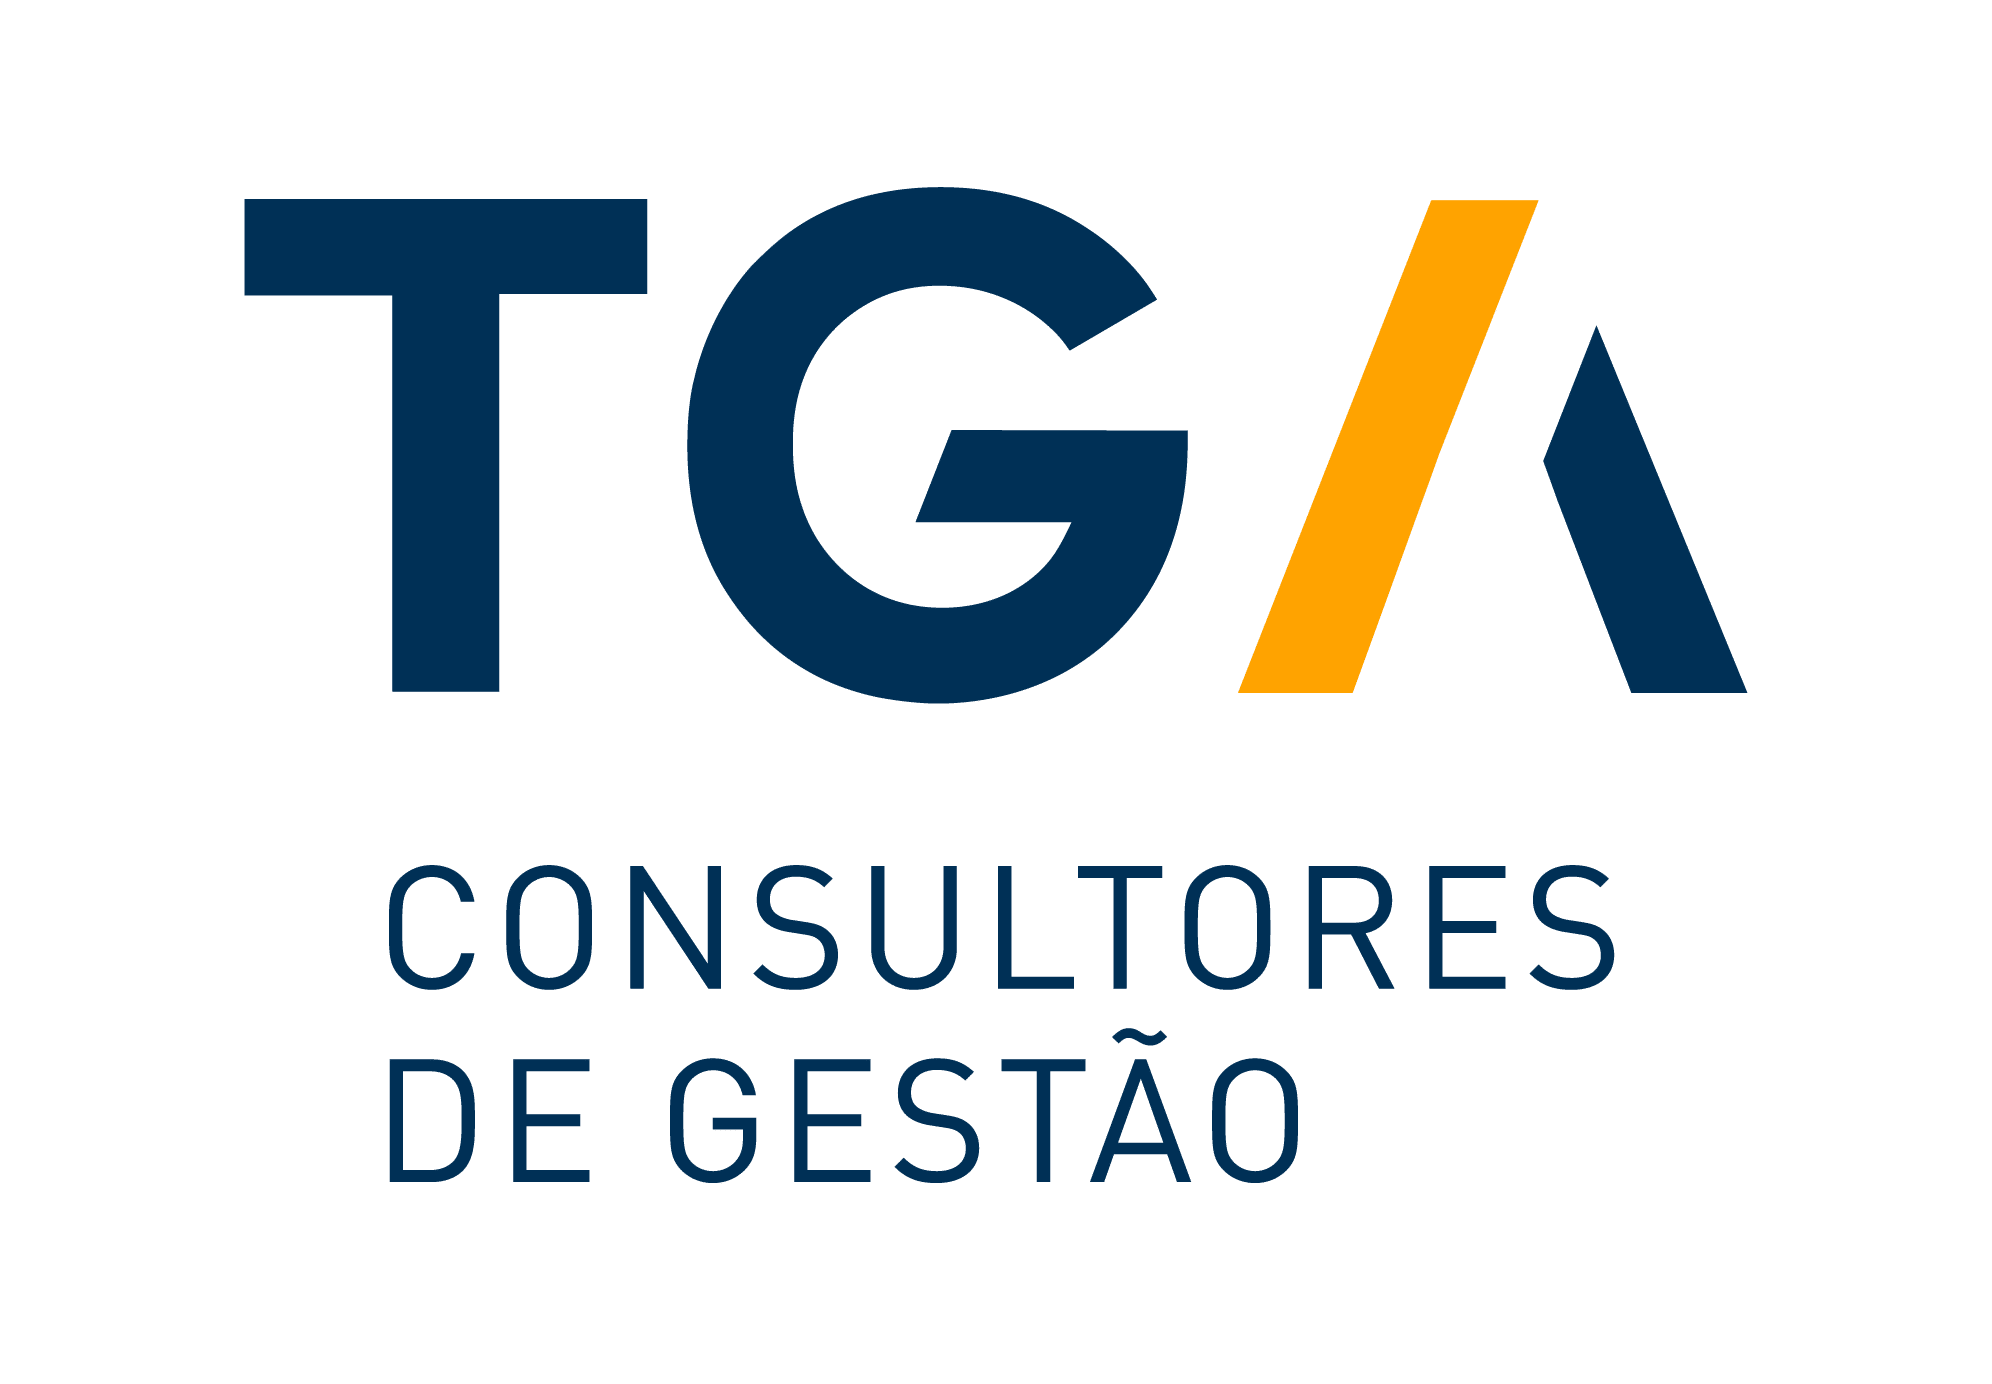 https://www.tga.pt/wp-content/uploads/2019/12/TGA-logotipo-v-cores.png